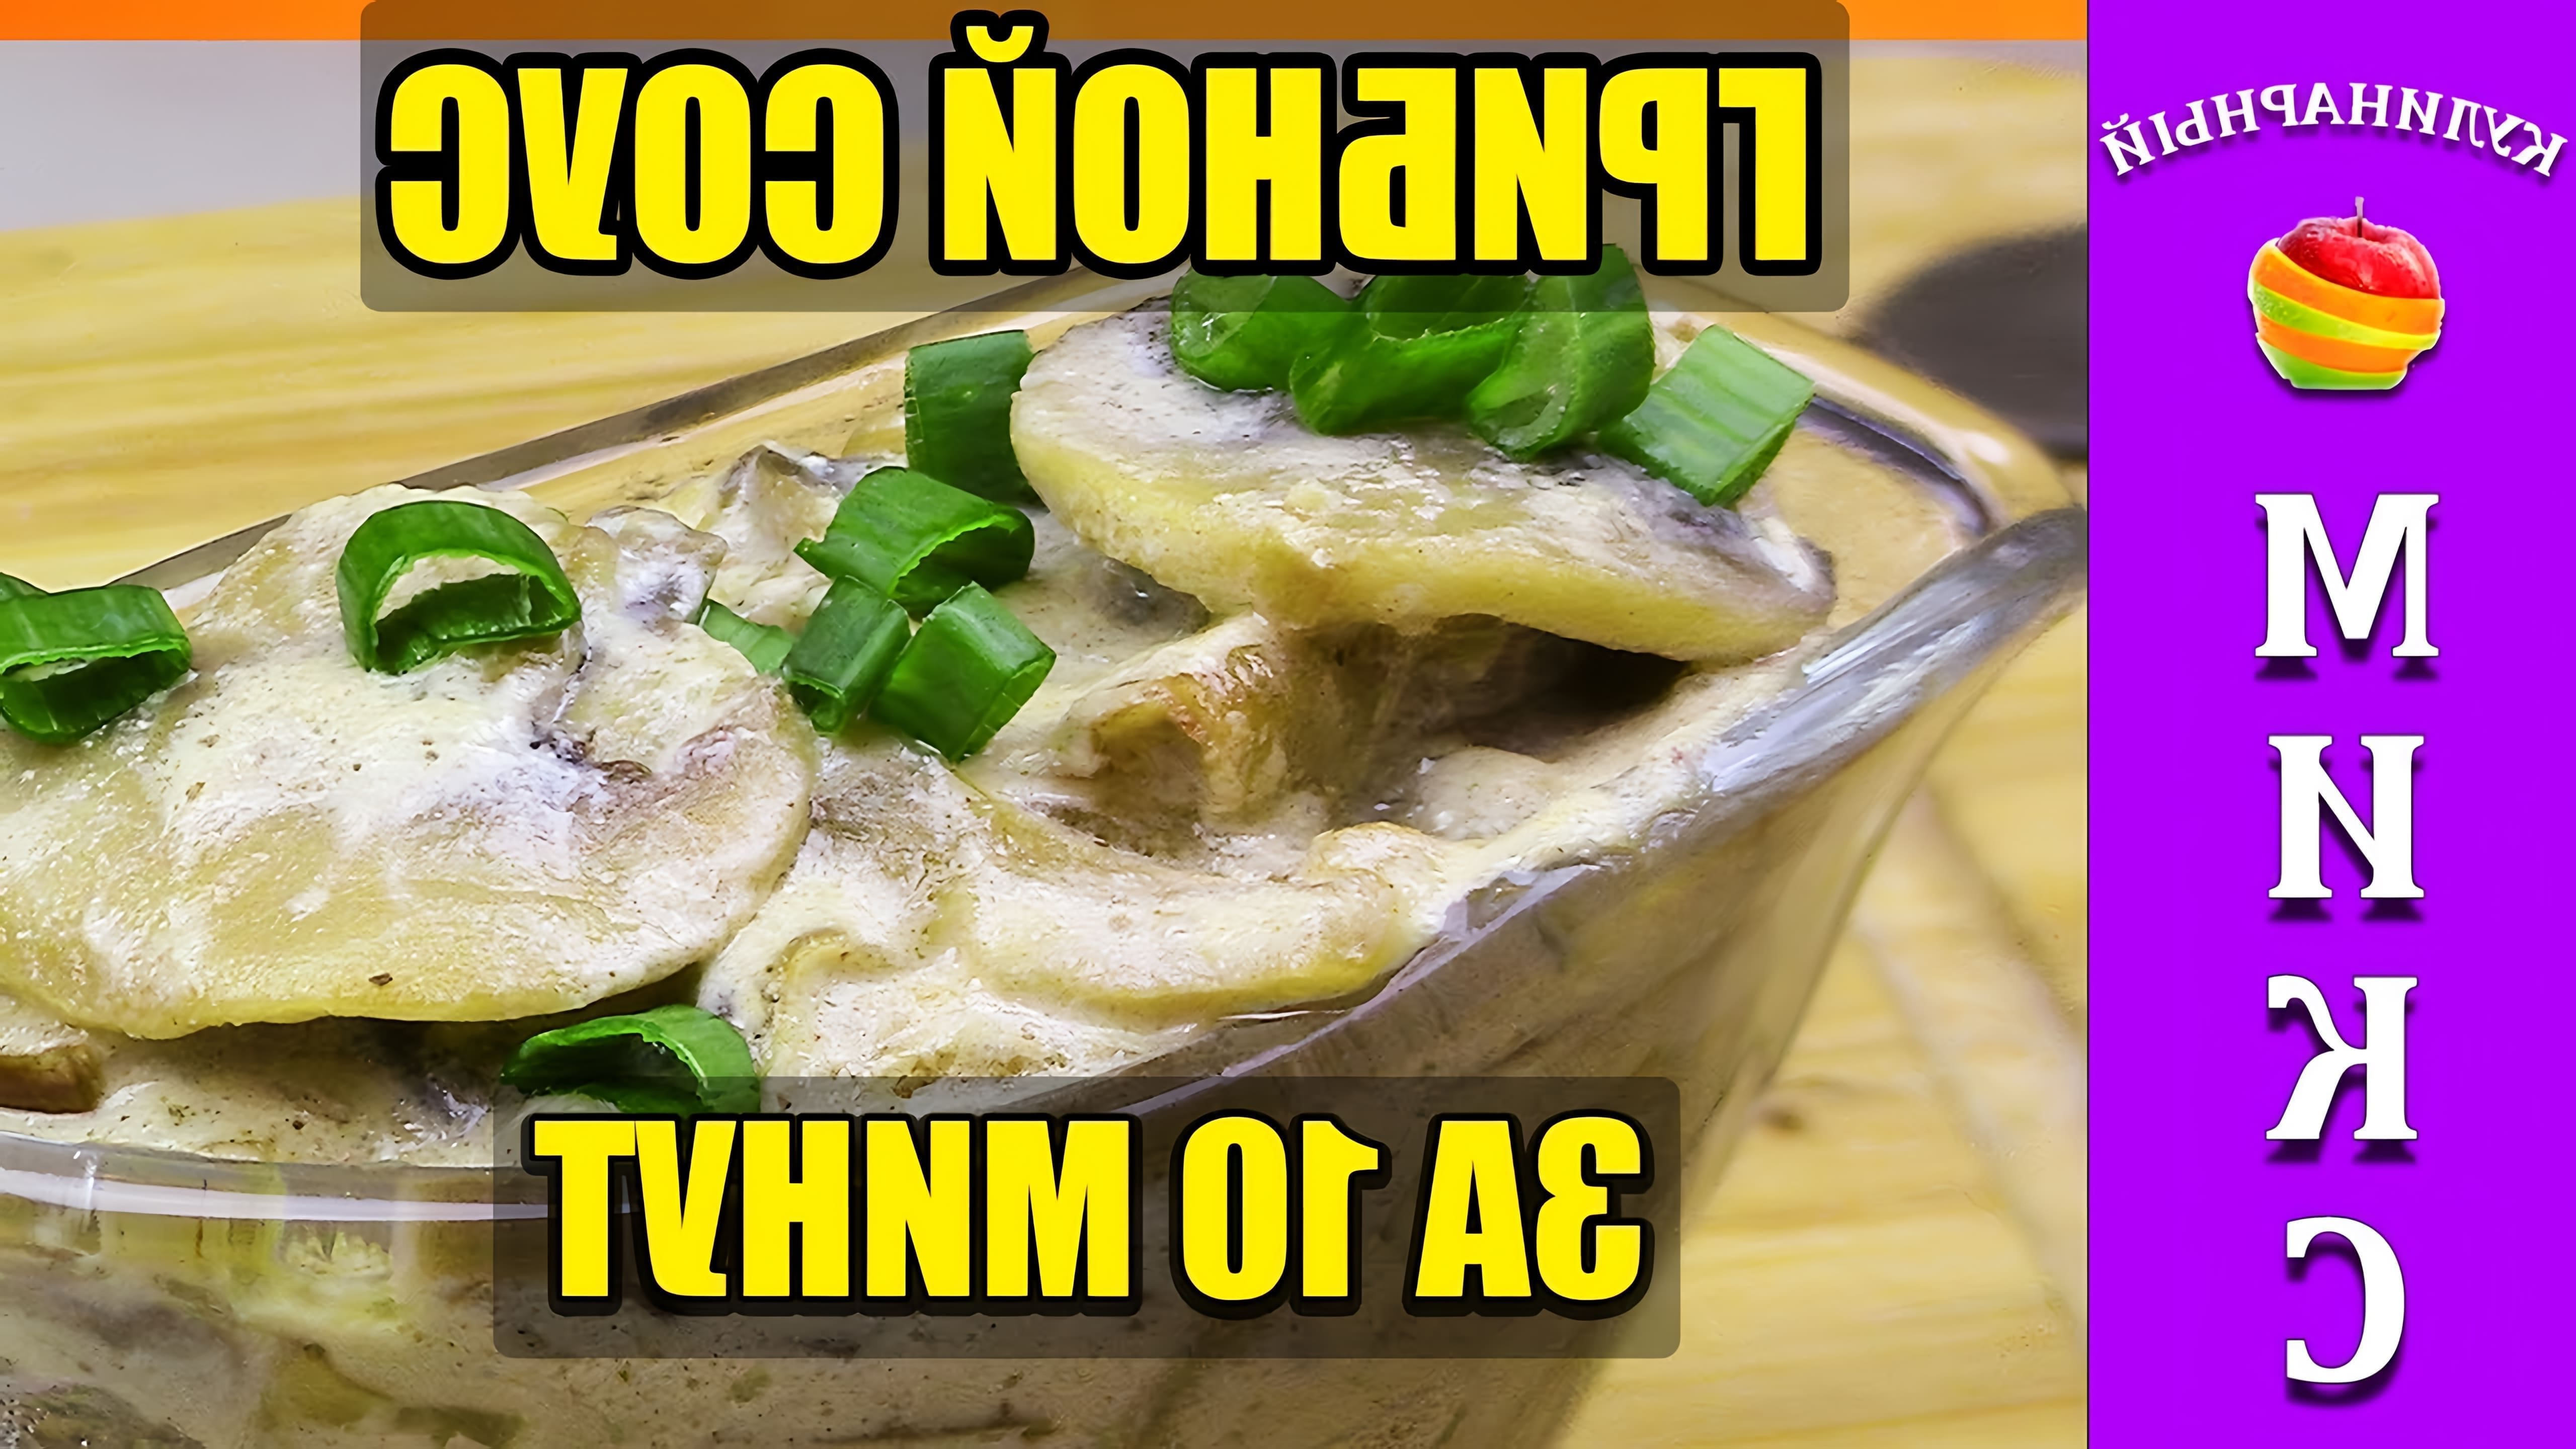 В этом видео демонстрируется процесс приготовления грибного соуса из шампиньонов со сметаной